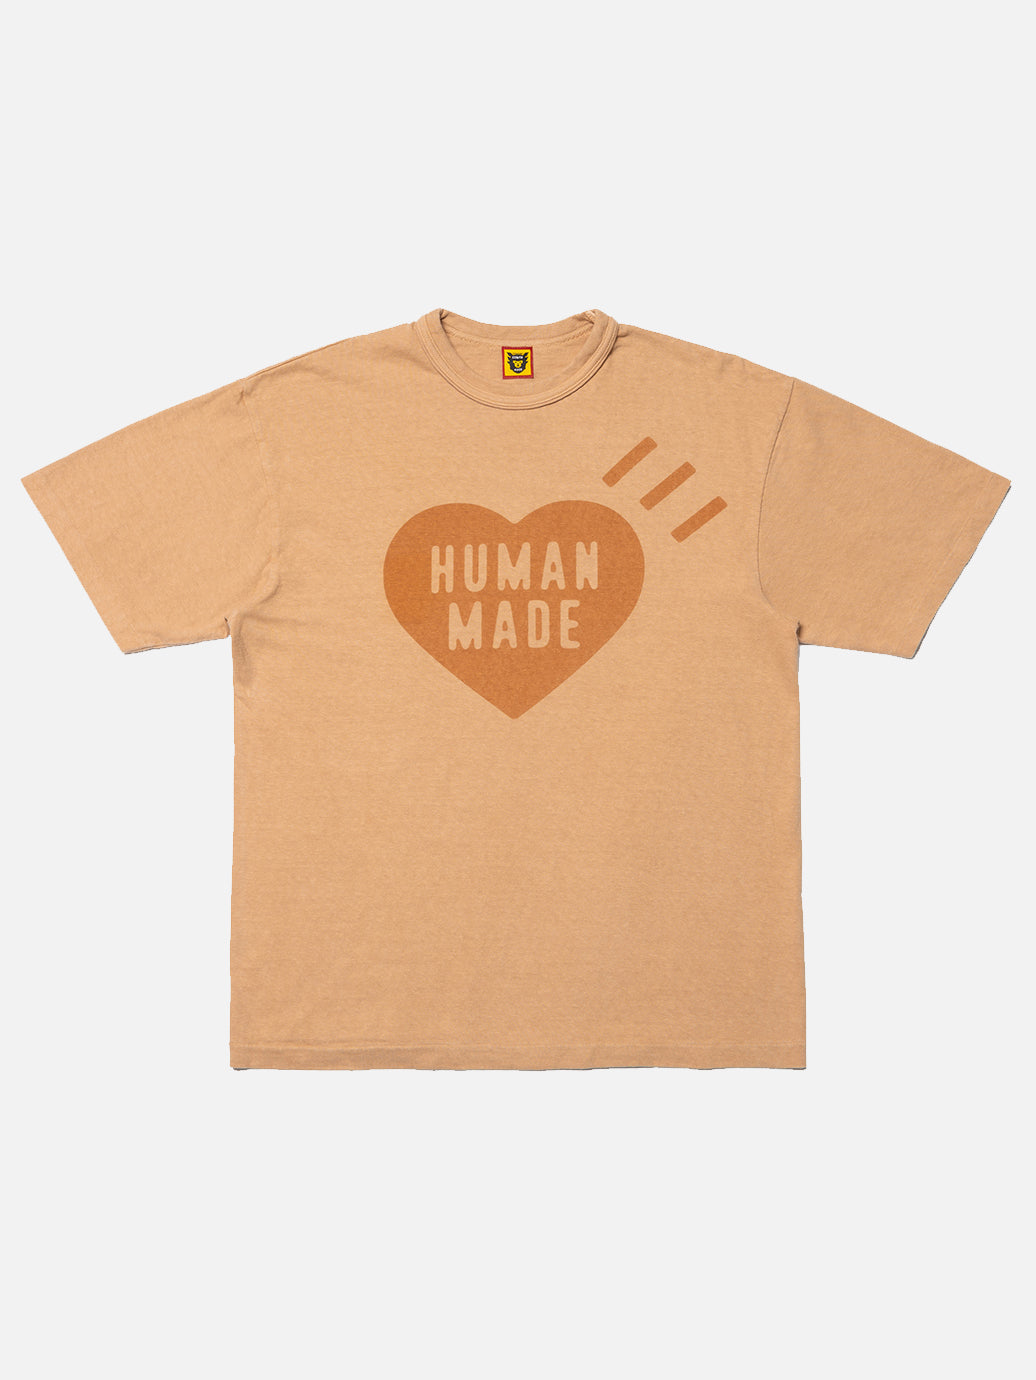 Human Made Ningen-sei Plant Dyed T-Shirt #1